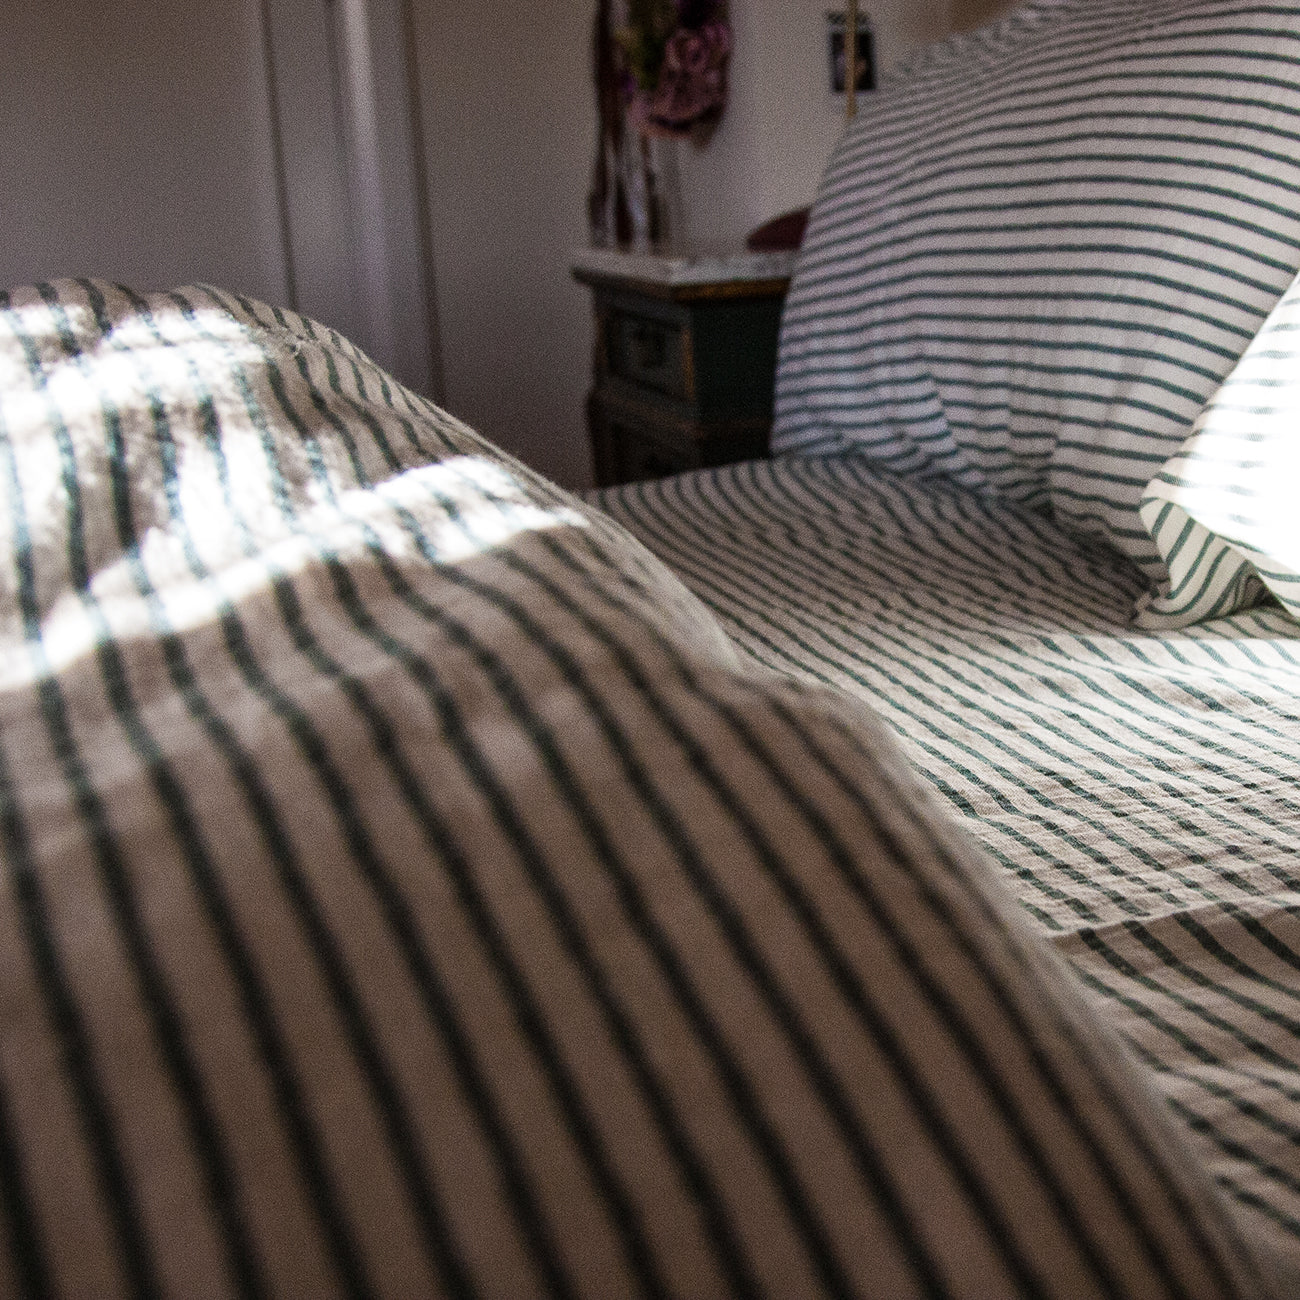 Detalle de juego de cama de lino verde rayado.